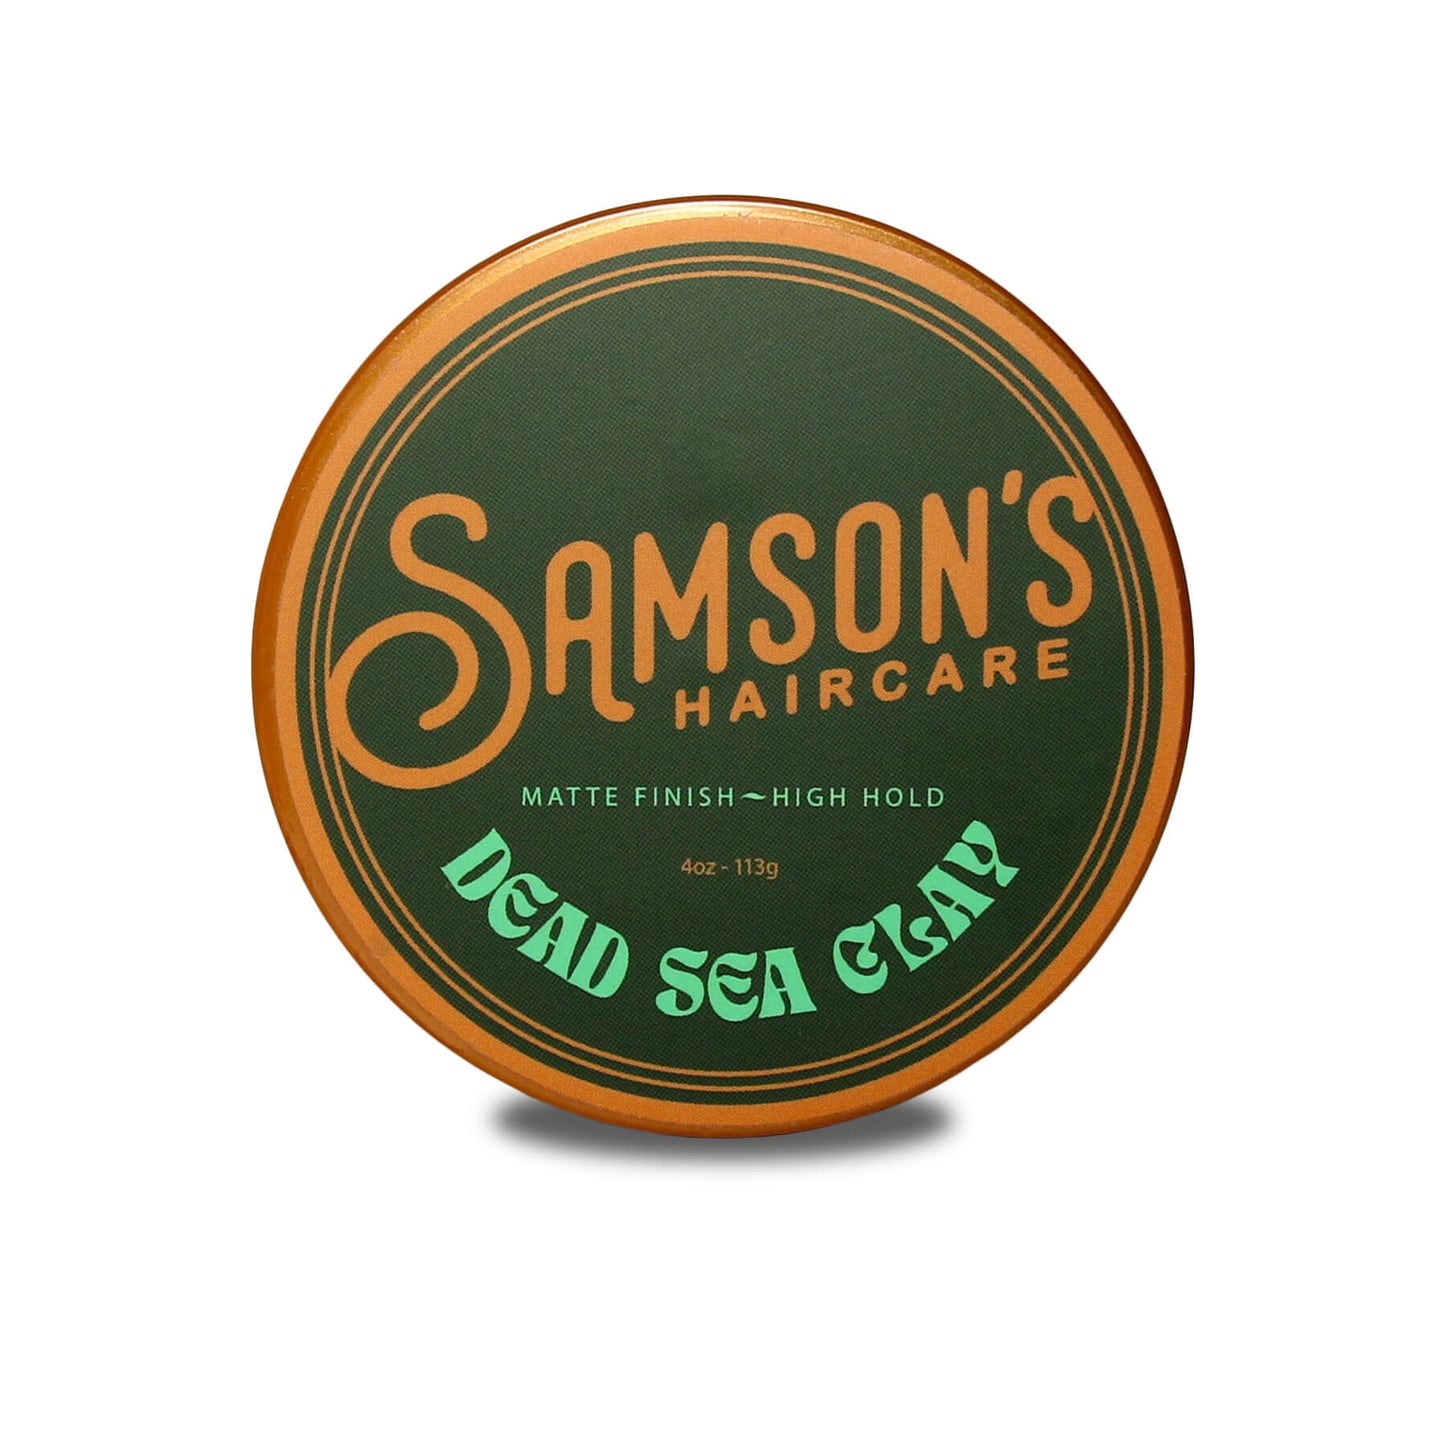 Samson's Haircare Dead Sea Clay 4OZ